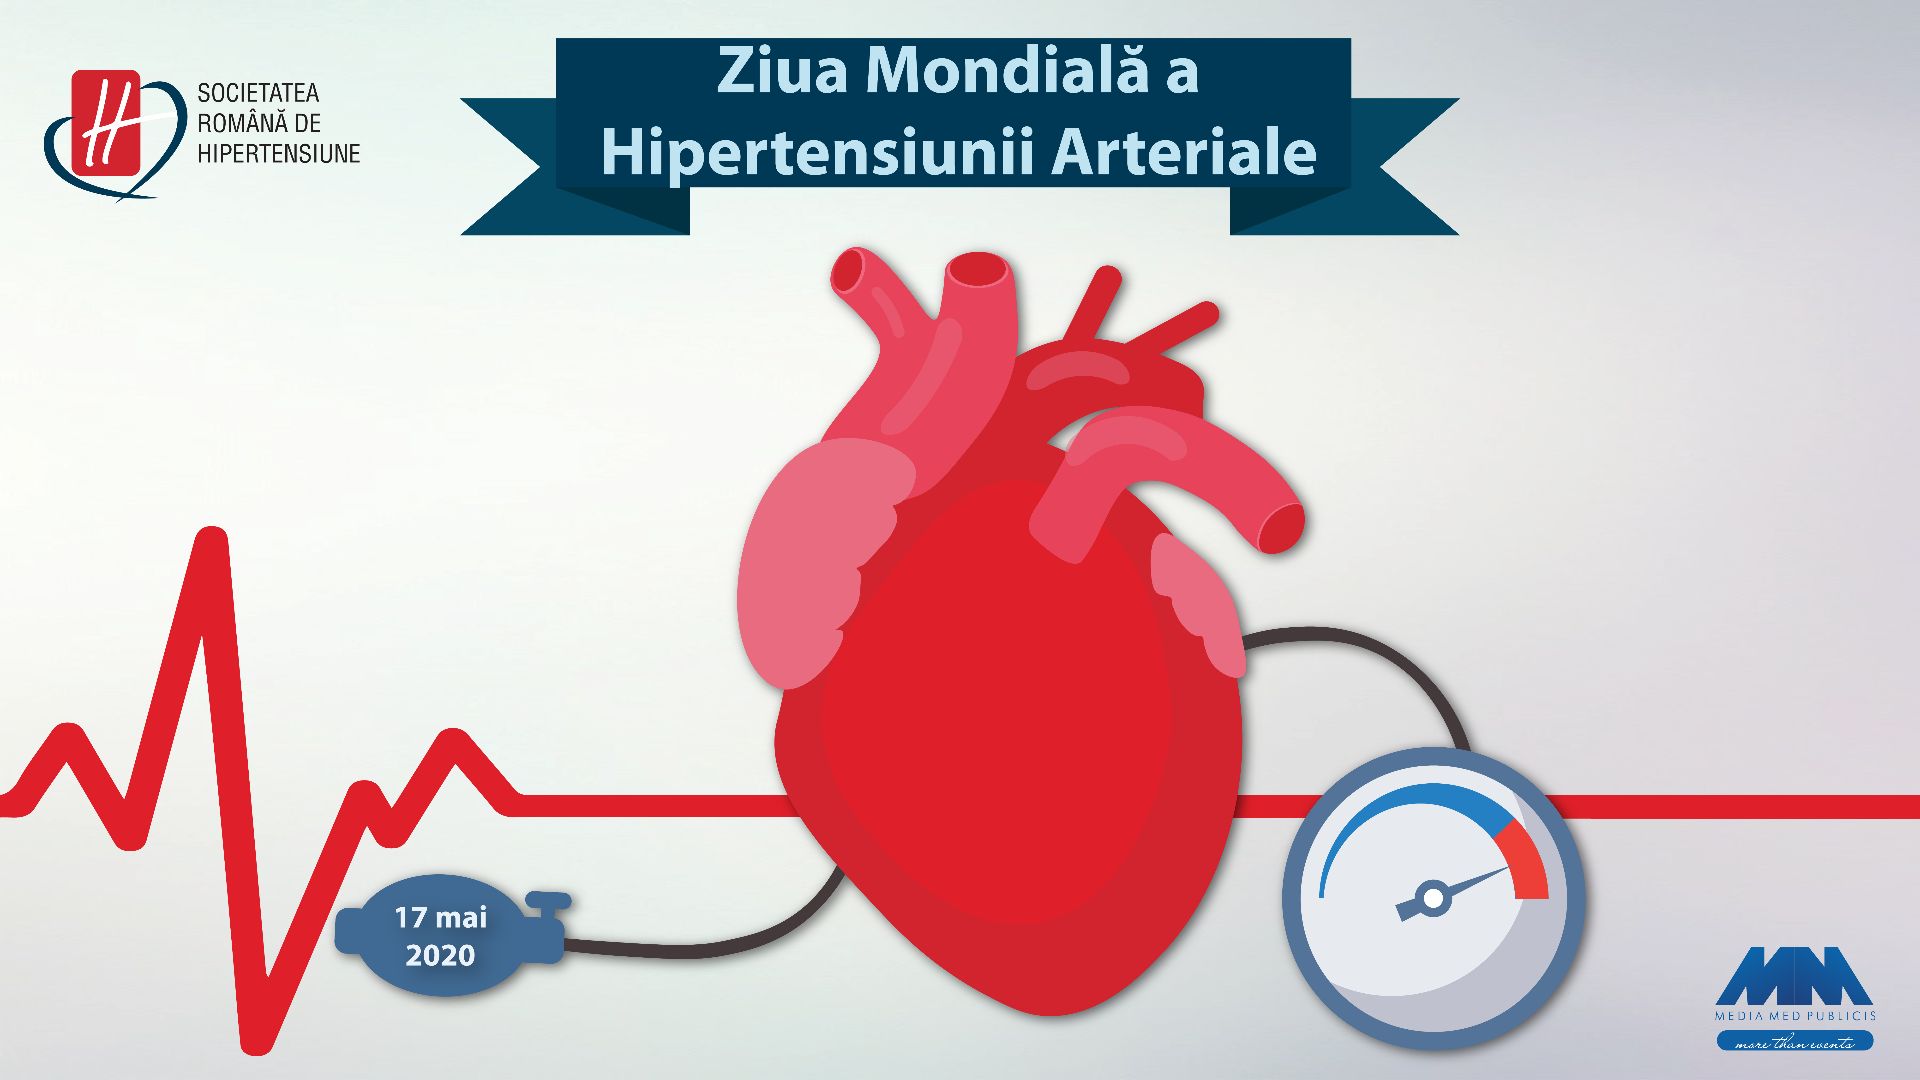 Hipertensiunea arterială, în contextul pandemiei de COVID-19